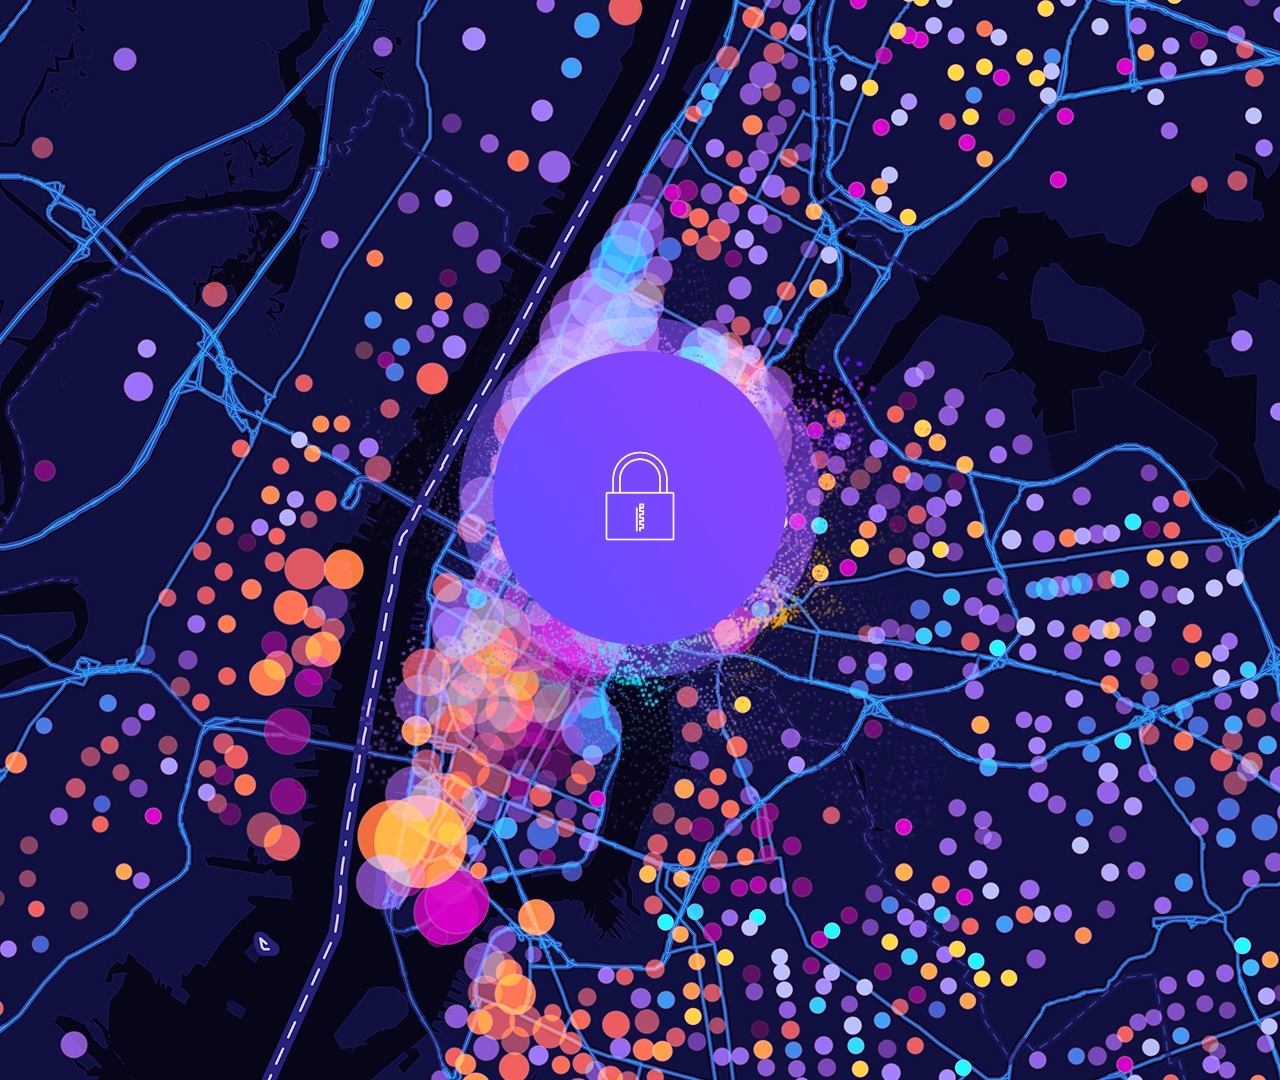 Symbol eines Schlosses und eine digitale Straßenkarte mit kreisförmigen Datenpunkten in Violett, Gelb und Pink